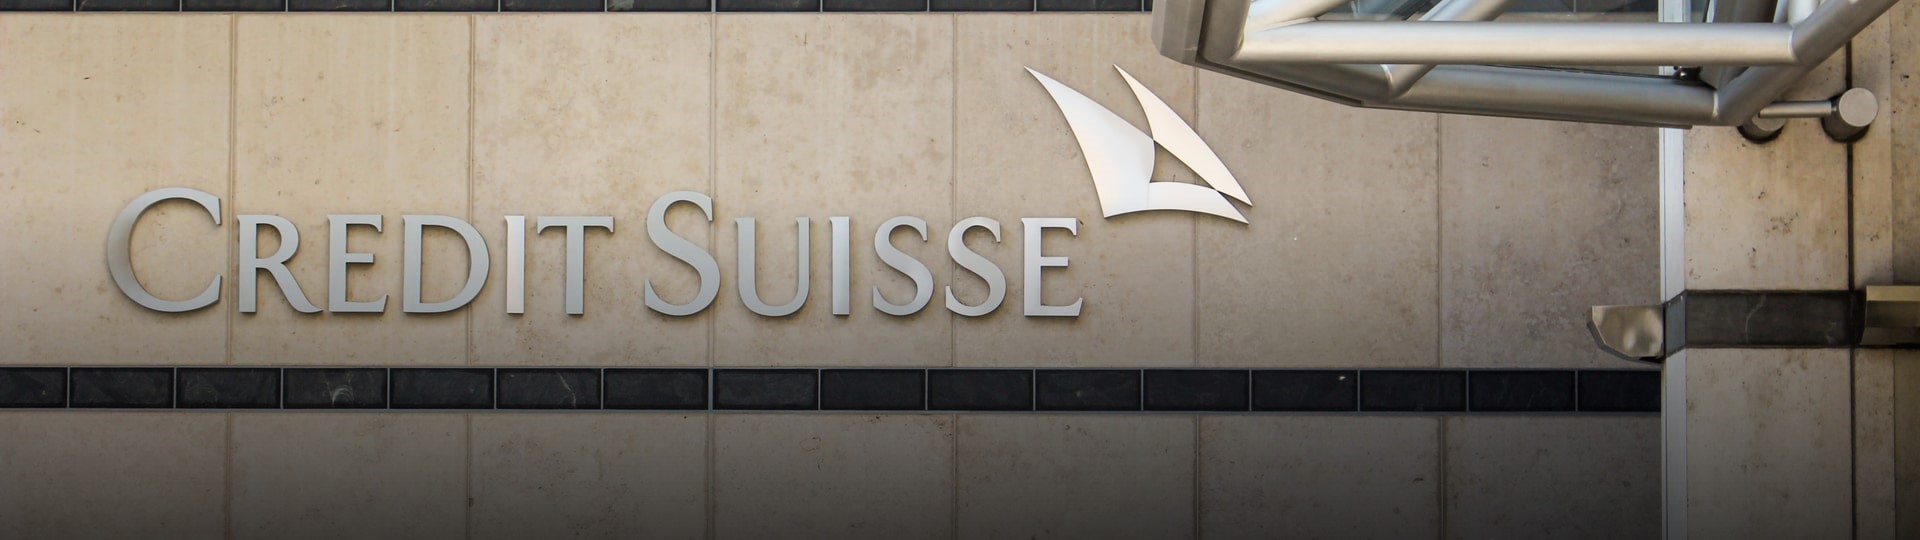 Credit Suisse je kvůli pádu fondu Archegos ve ztrátě